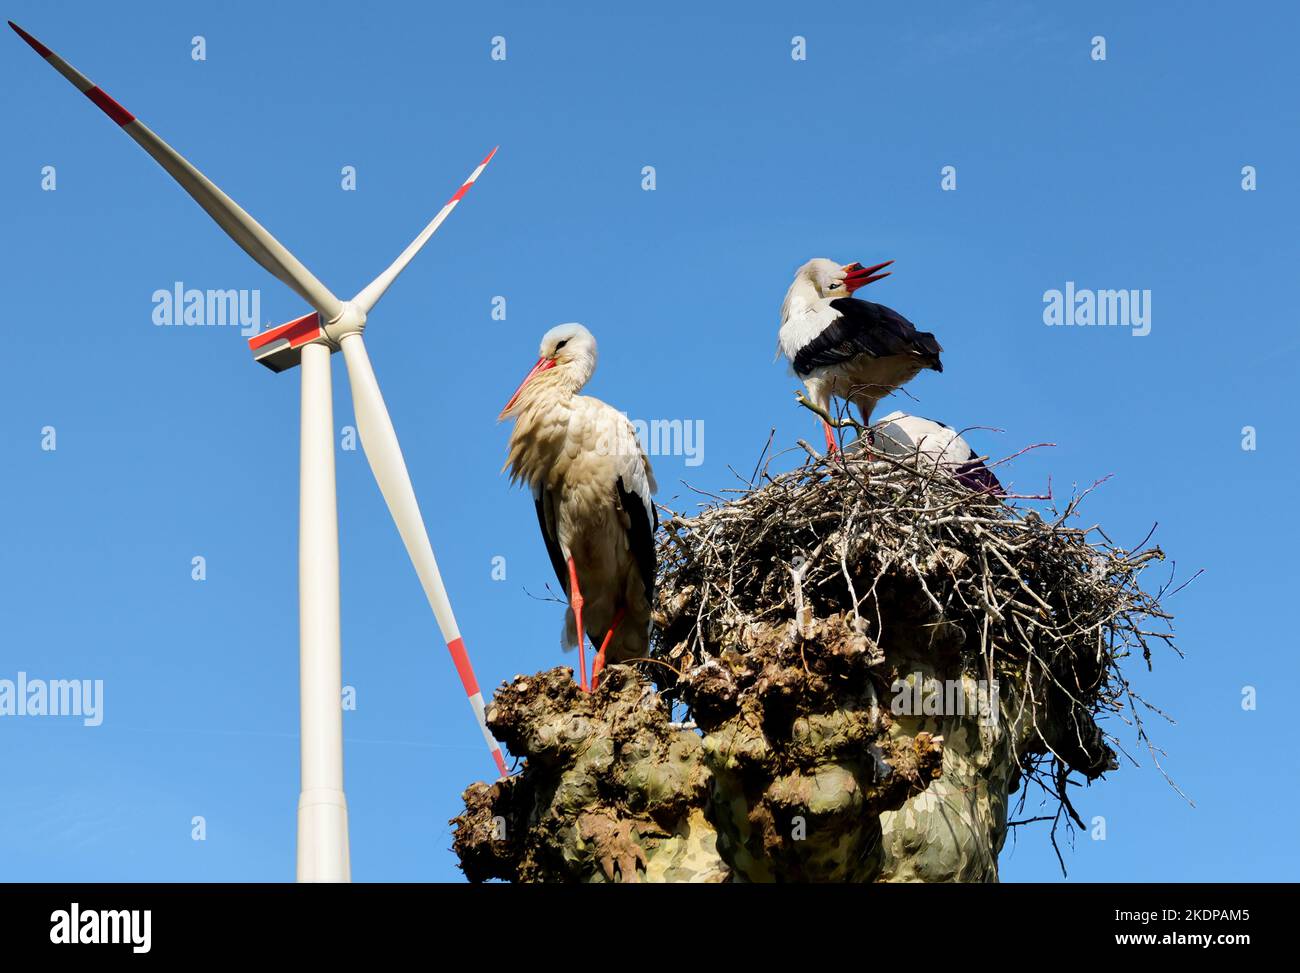 Symbolisches Bild: Störche in der Nähe von Windenergieanlagen. Zum Schutz der Umwelt können Windenergieanlagen Vögel töten Stockfoto